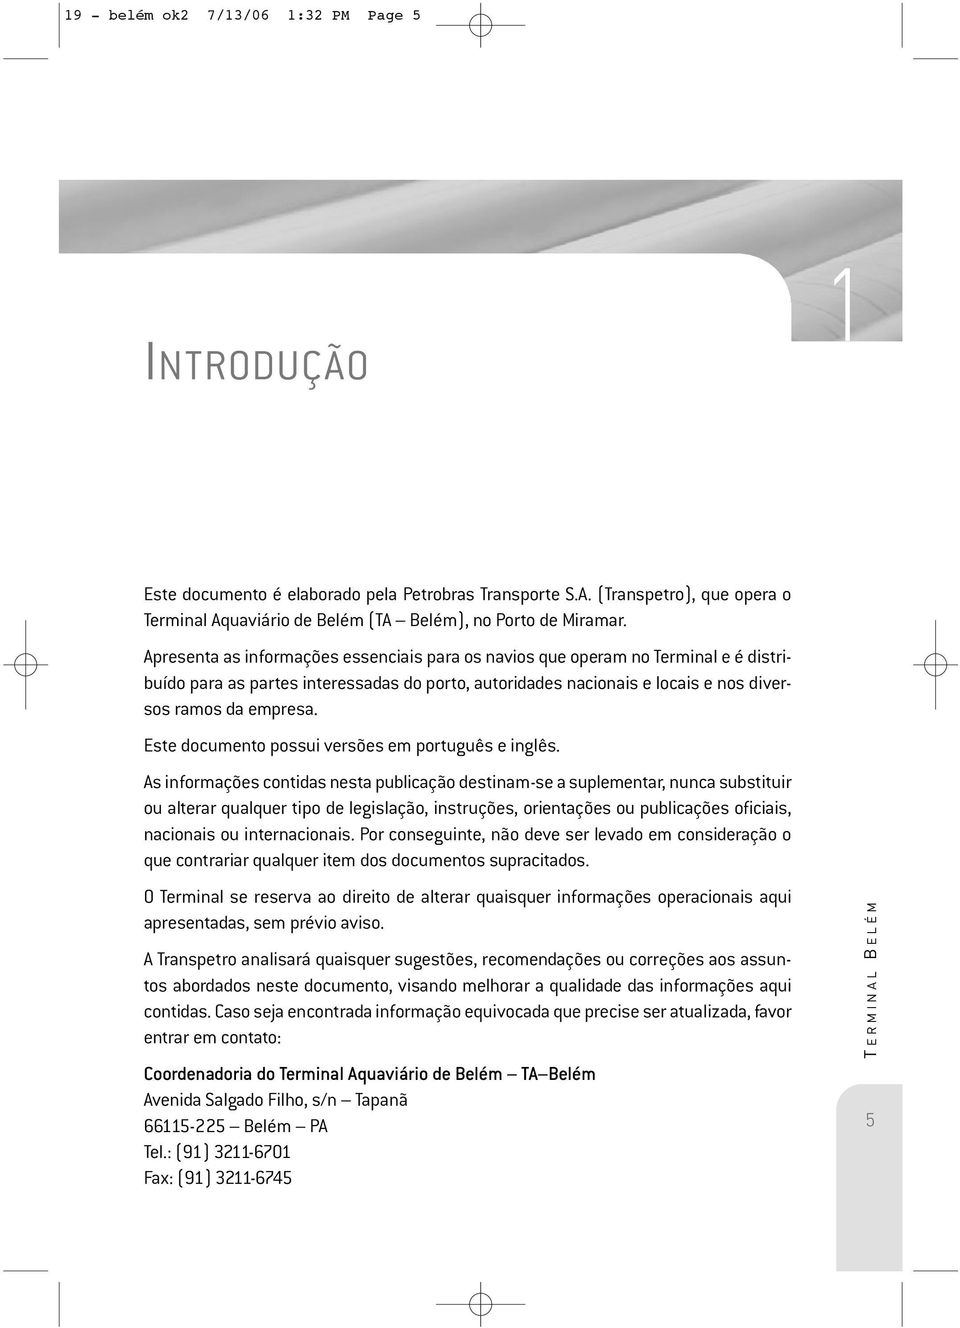 Este documento possui versões em português e inglês.